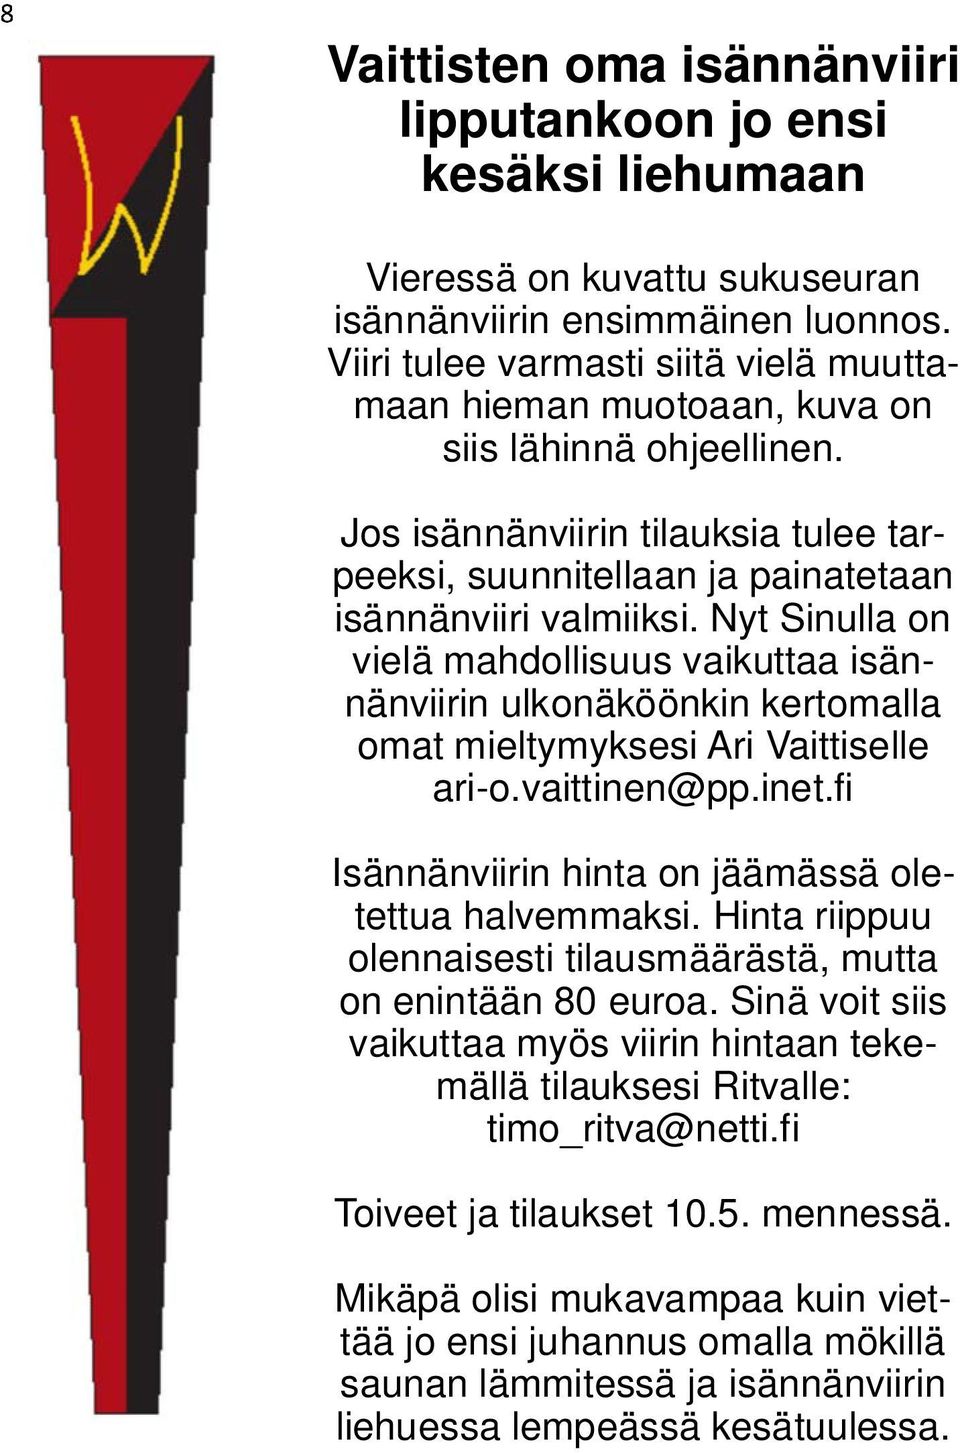 Nyt Sinulla on vielä mahdollisuus vaikuttaa isännänviirin ulkonäköönkin kertomalla omat mieltymyksesi Ari Vaittiselle ari-o.vaittinen@pp.inet.fi Isännänviirin hinta on jäämässä oletettua halvemmaksi.